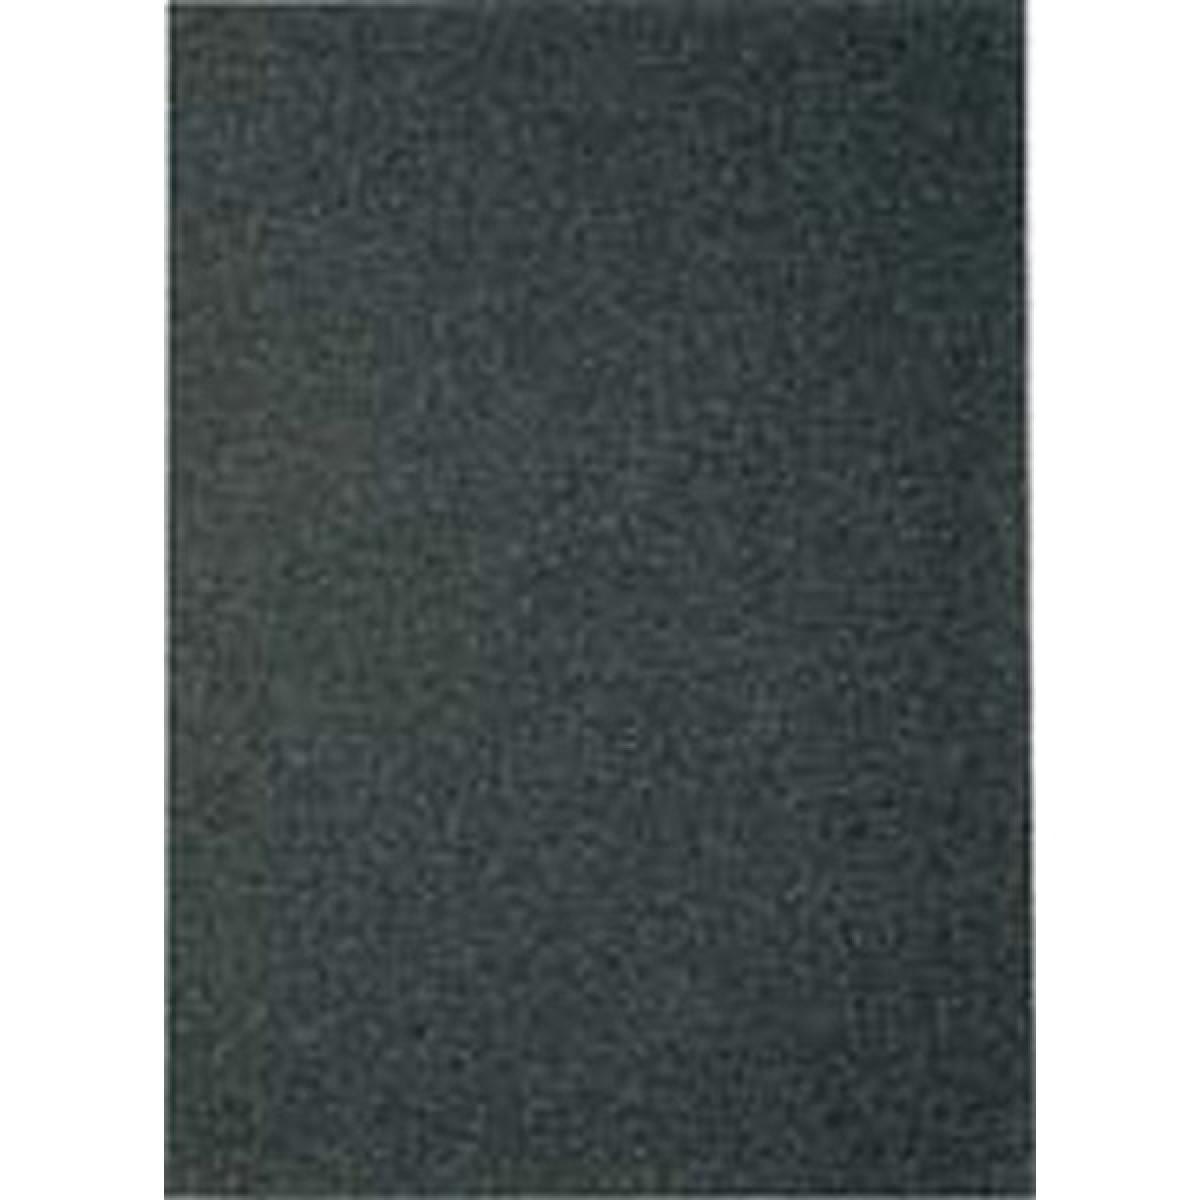 Klingspor - Papier en abrasif résistant à l'eau PS11230x280mm grain 800 Klingspor (Par 100) - Abrasifs et brosses